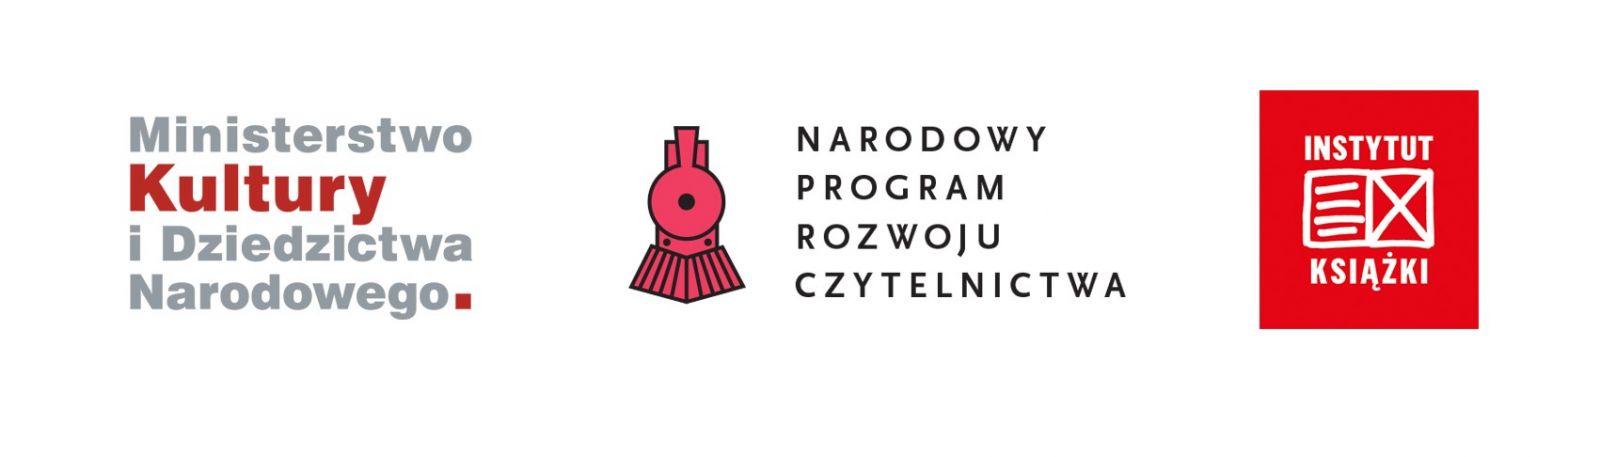 Logo Ministerstwa Kultury i Dziedzictwa Narodowego, logo Narodowy Program Rozwoju Czytelnictwa, logo Instytut Książki.